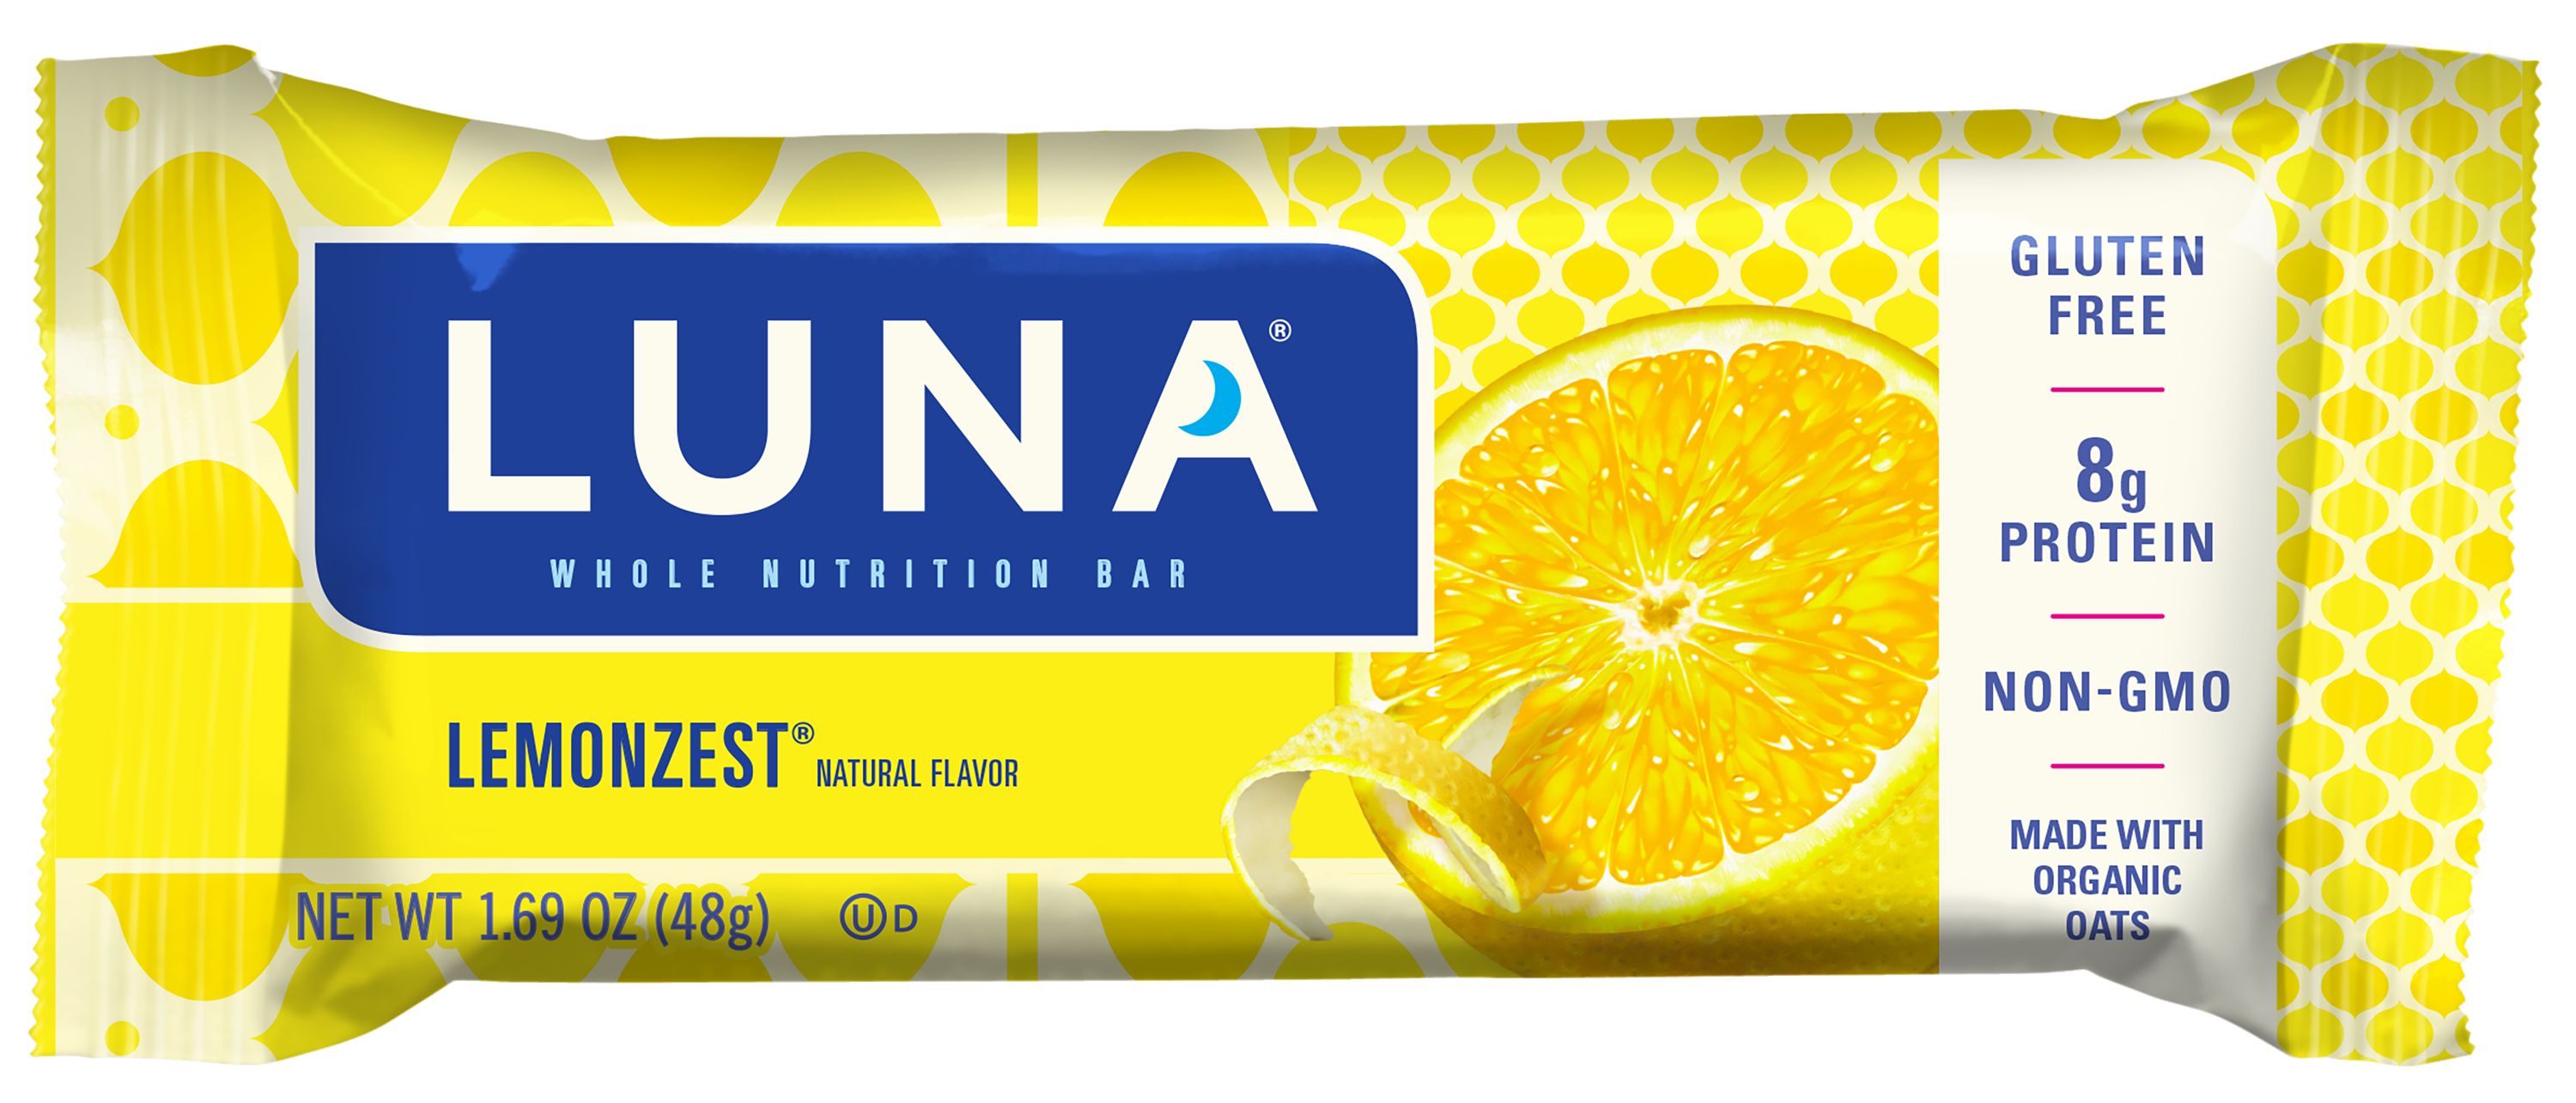 LUNA Lemonzest Whole Nutrition Bar, 1.69 oz